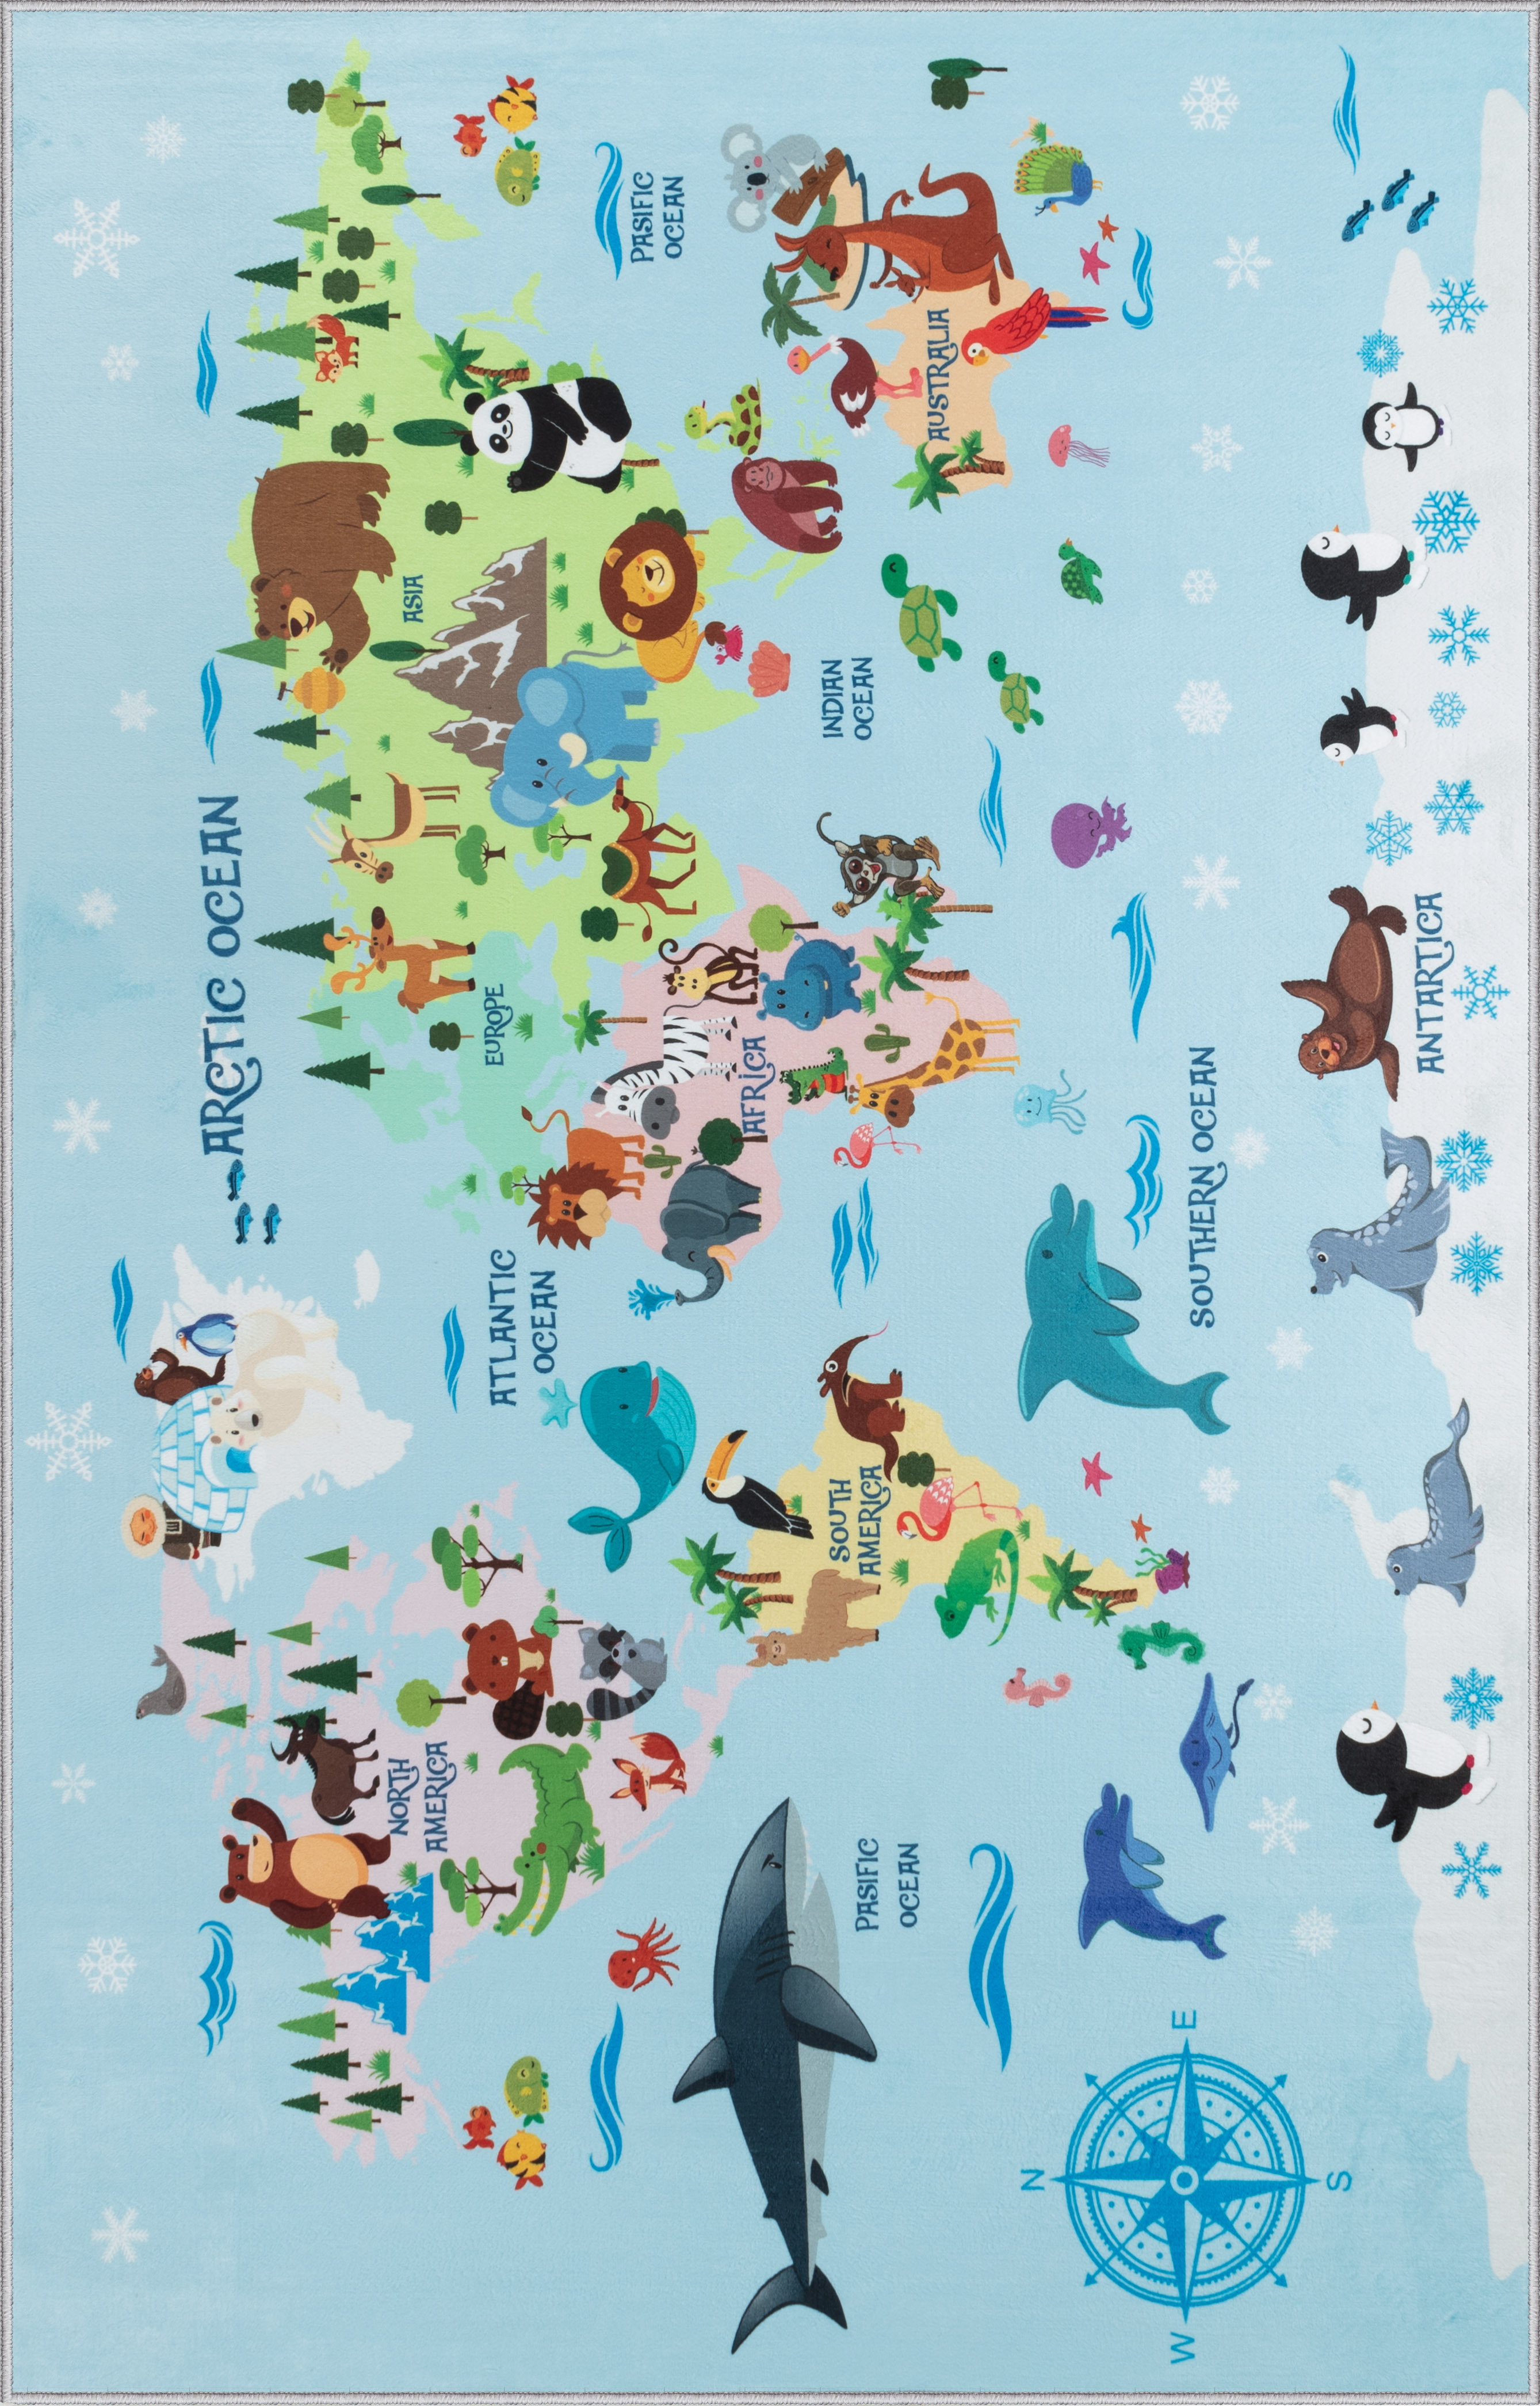 Ковер комнатный детский KOVRIKANA карта мира развивающий голубой животные компас 120см на 175см - фото 3